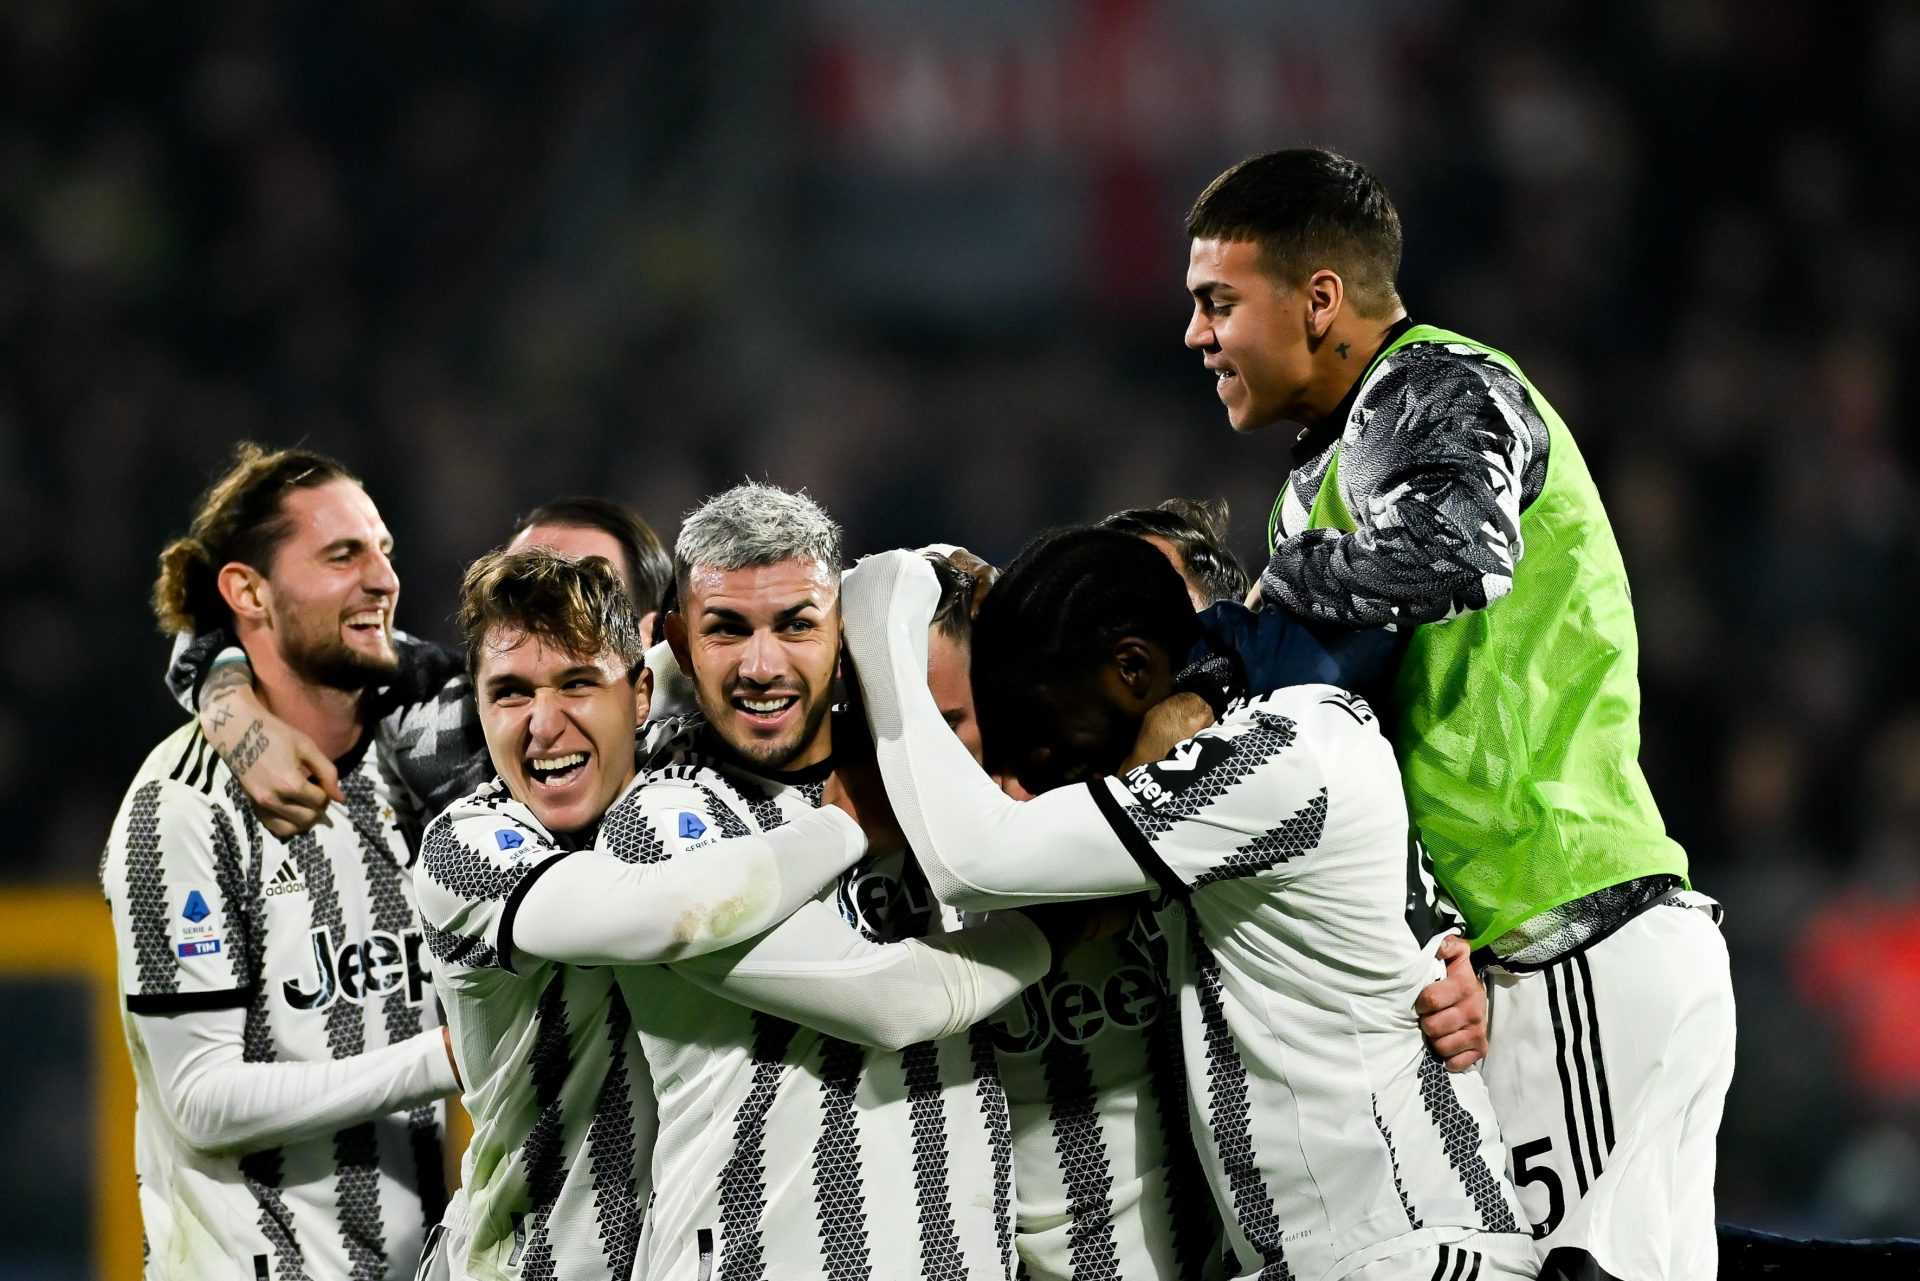 UFFICIALE - Juventus: accolto il ricorso con rinvio